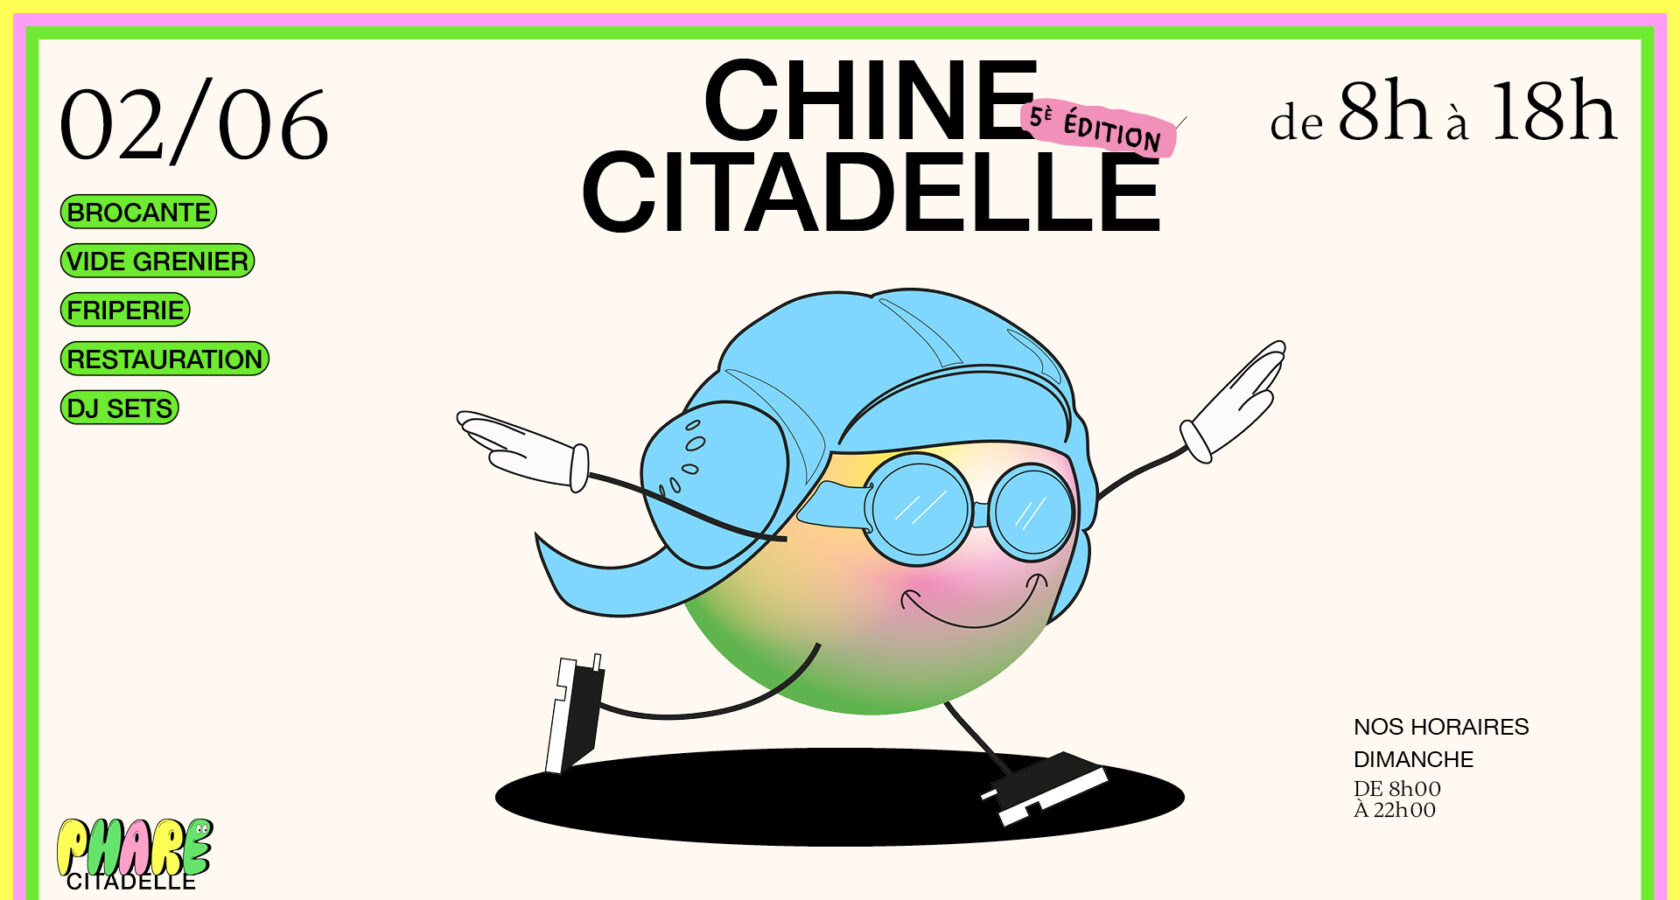 Chine Citadelle #5 revient le dimanche 2 juin à Phare Citadelle de 8h à 18h.